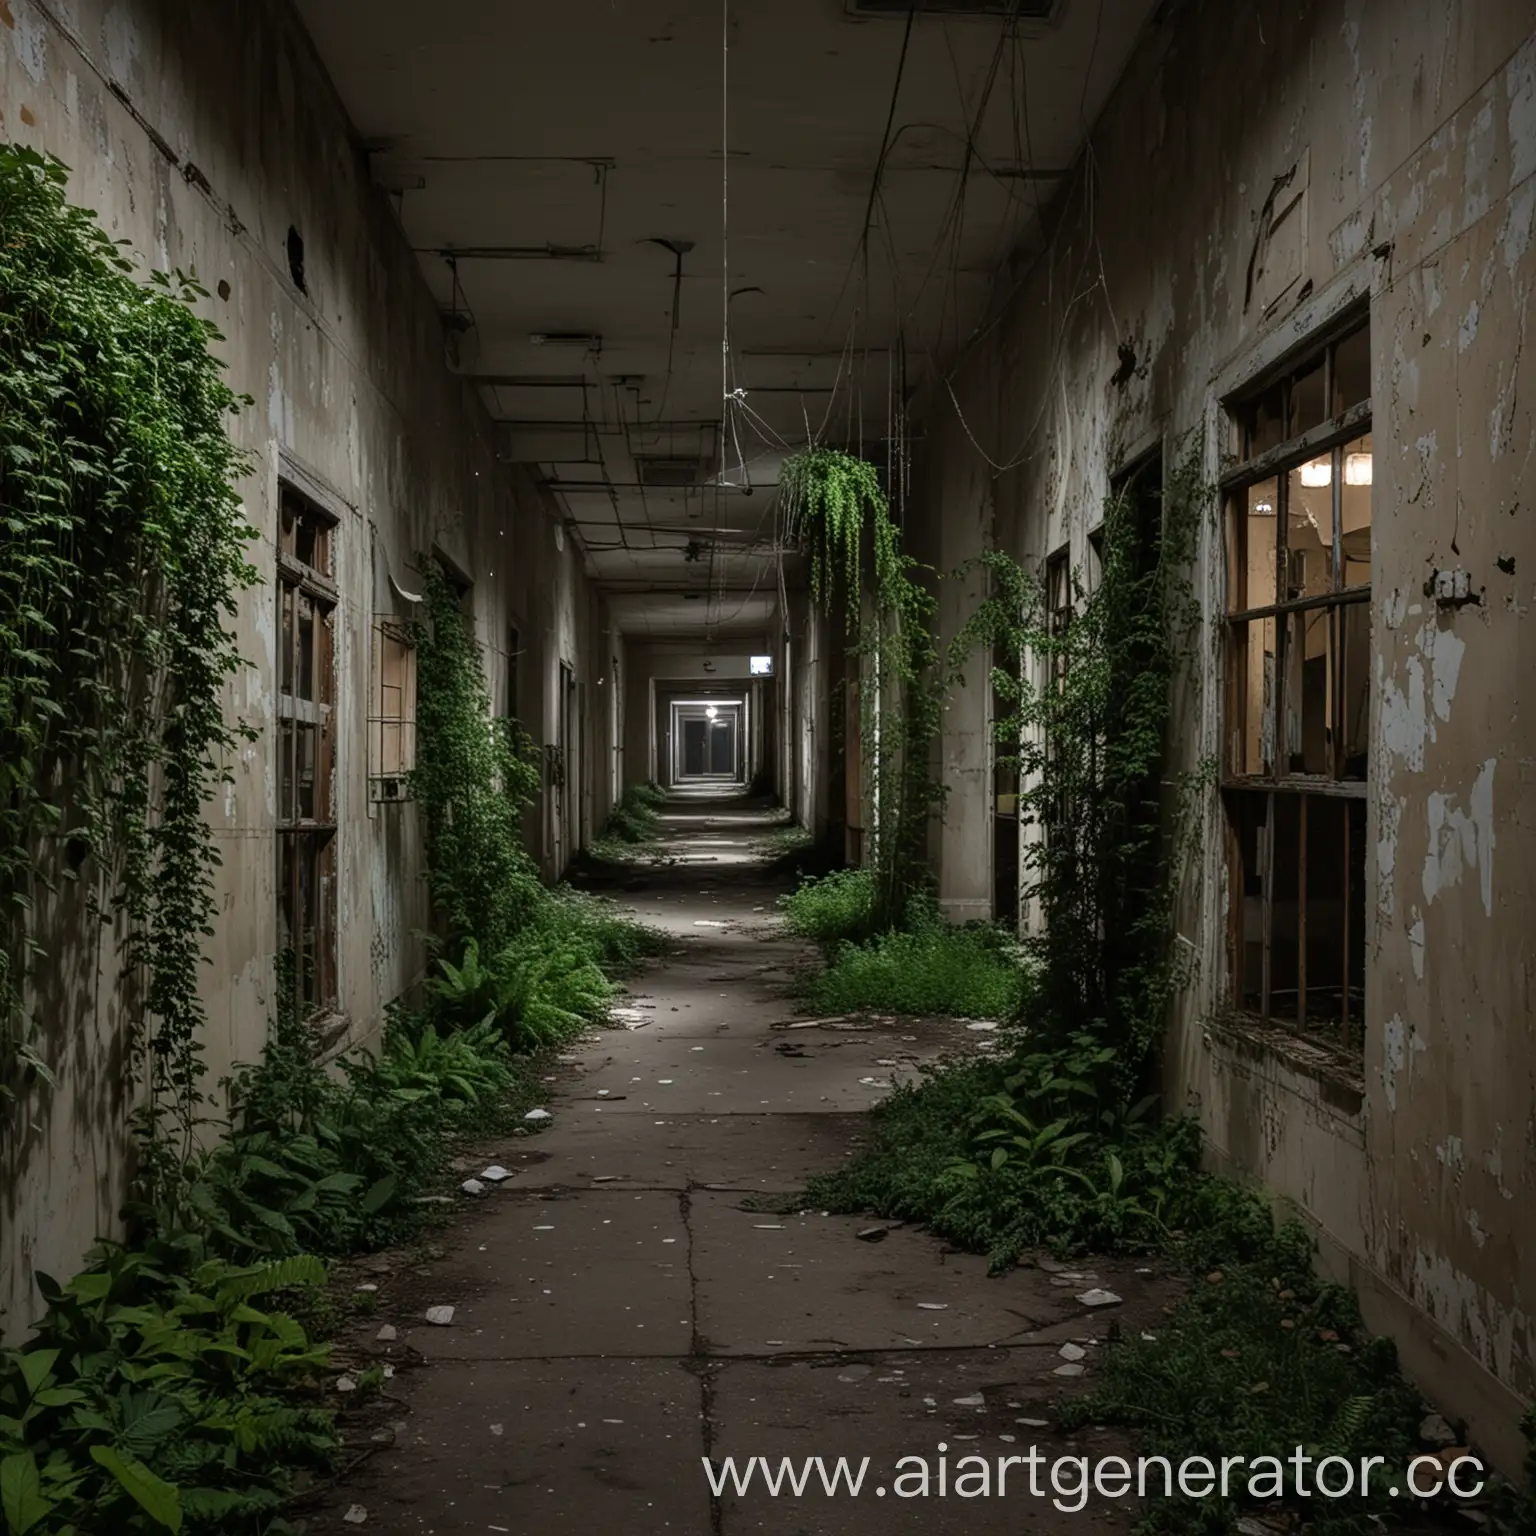 Заброшенная псих больница, на улице ночь, внутри, везде свисают растения